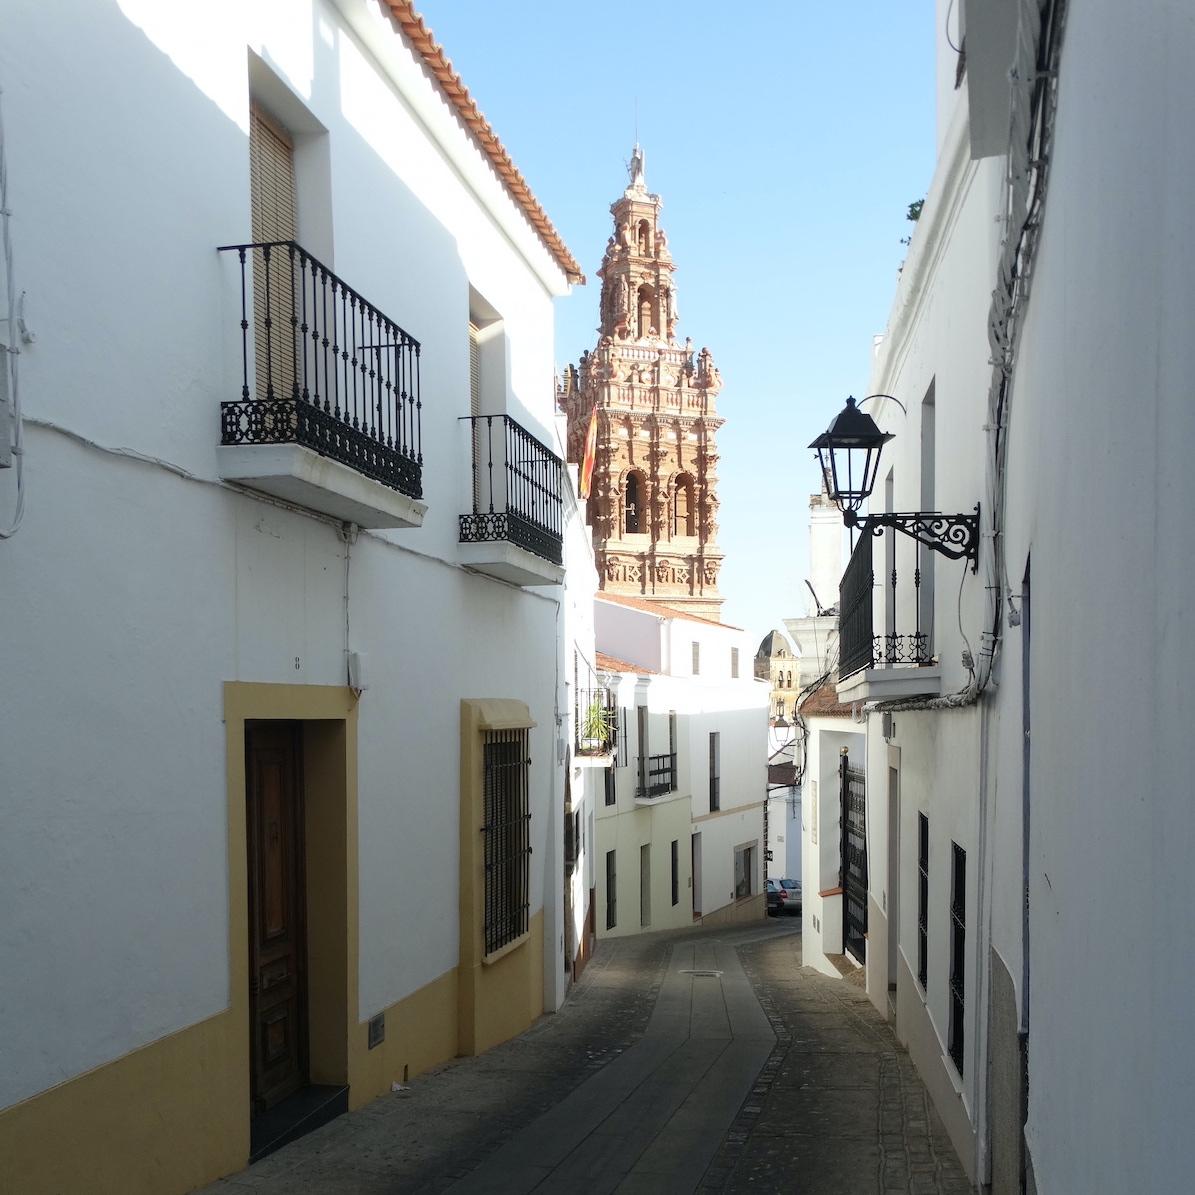 Torre y calle en Jeres de los Caballeros (Badajoz) ©LeequidMagazine